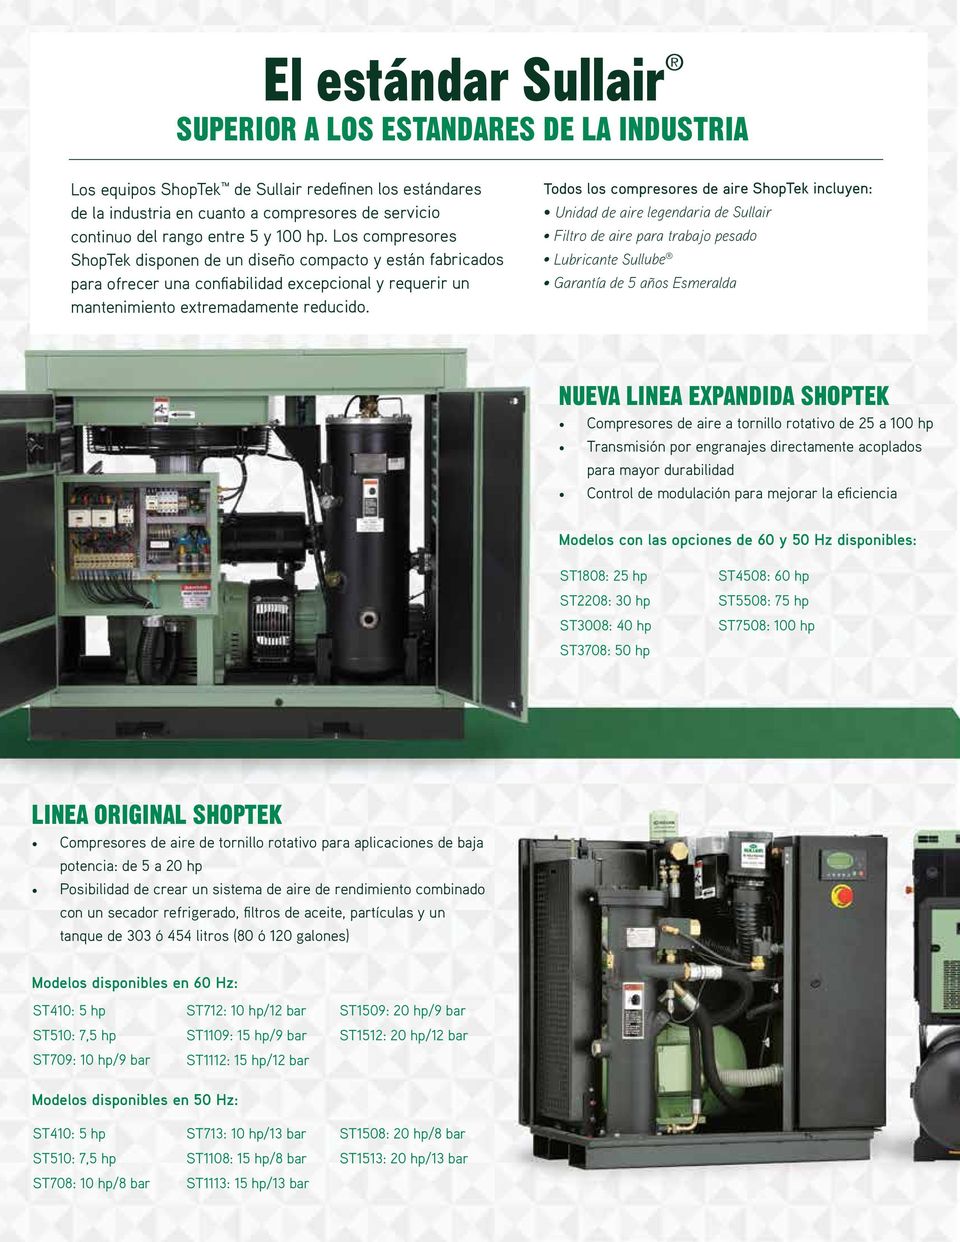 Todos los compresores de aire ShopTek incluyen: Unidad de aire legendaria de Sullair Filtro de aire para trabajo pesado Lubricante Sullube Garantía de 5 años Esmeralda NUEVA LINEA EXPANDIDA SHOPTEK